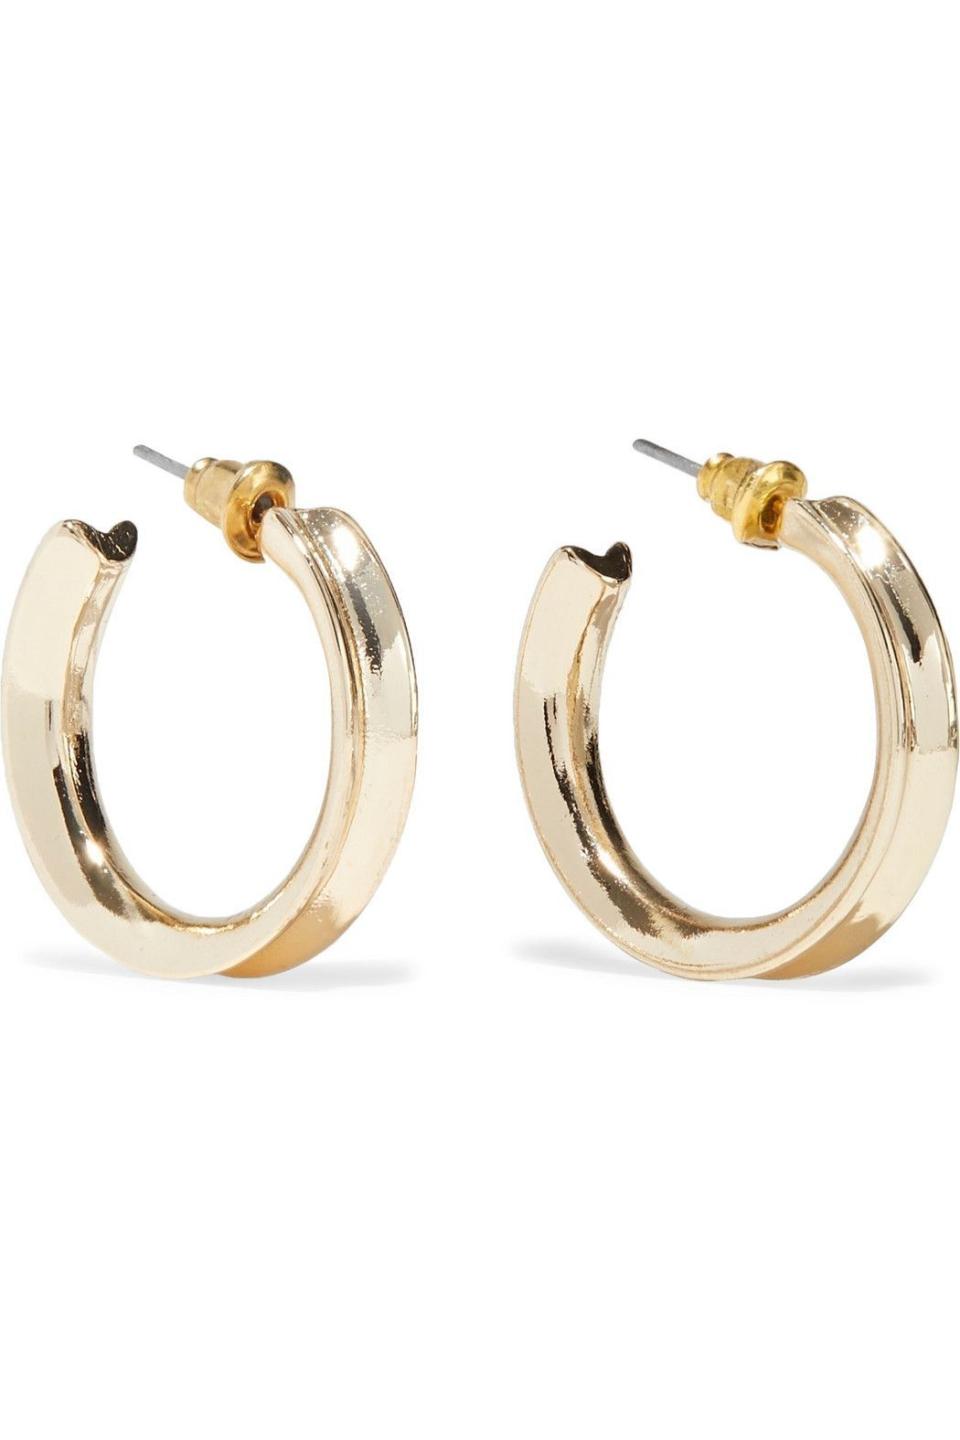 2) Gold-Plated Hoop Earrings